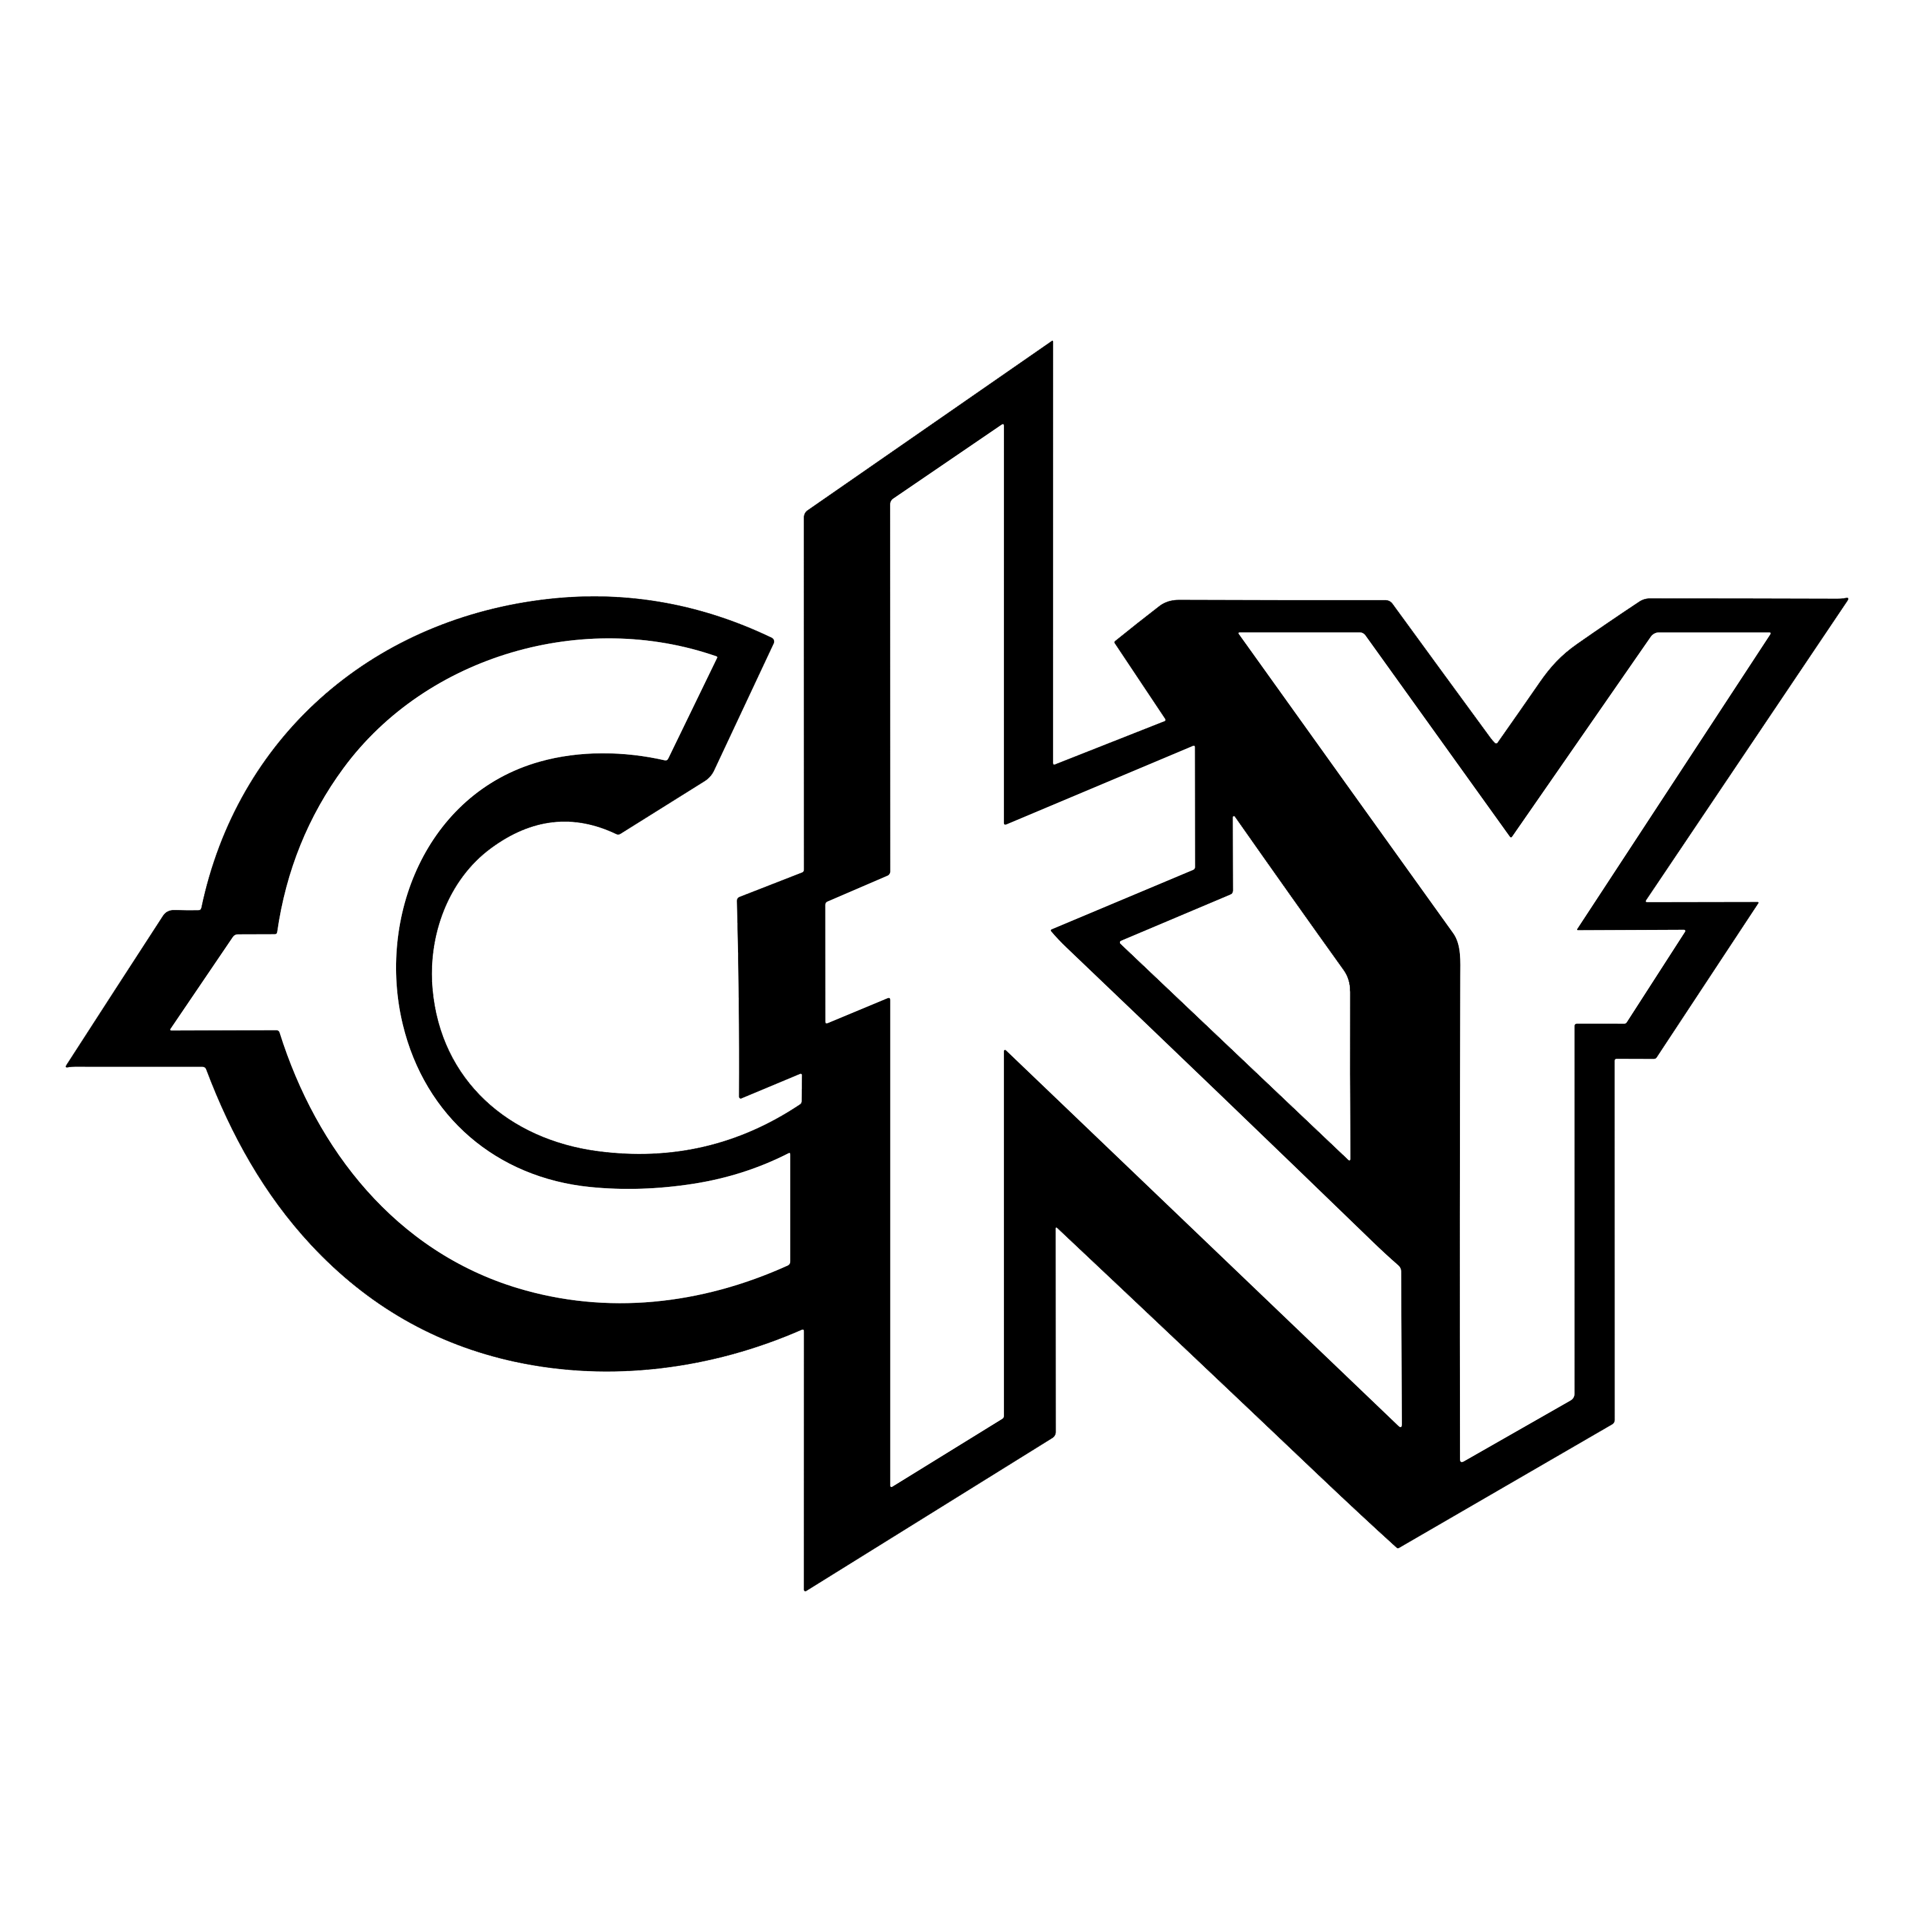 CKY Logo  Transparent Image